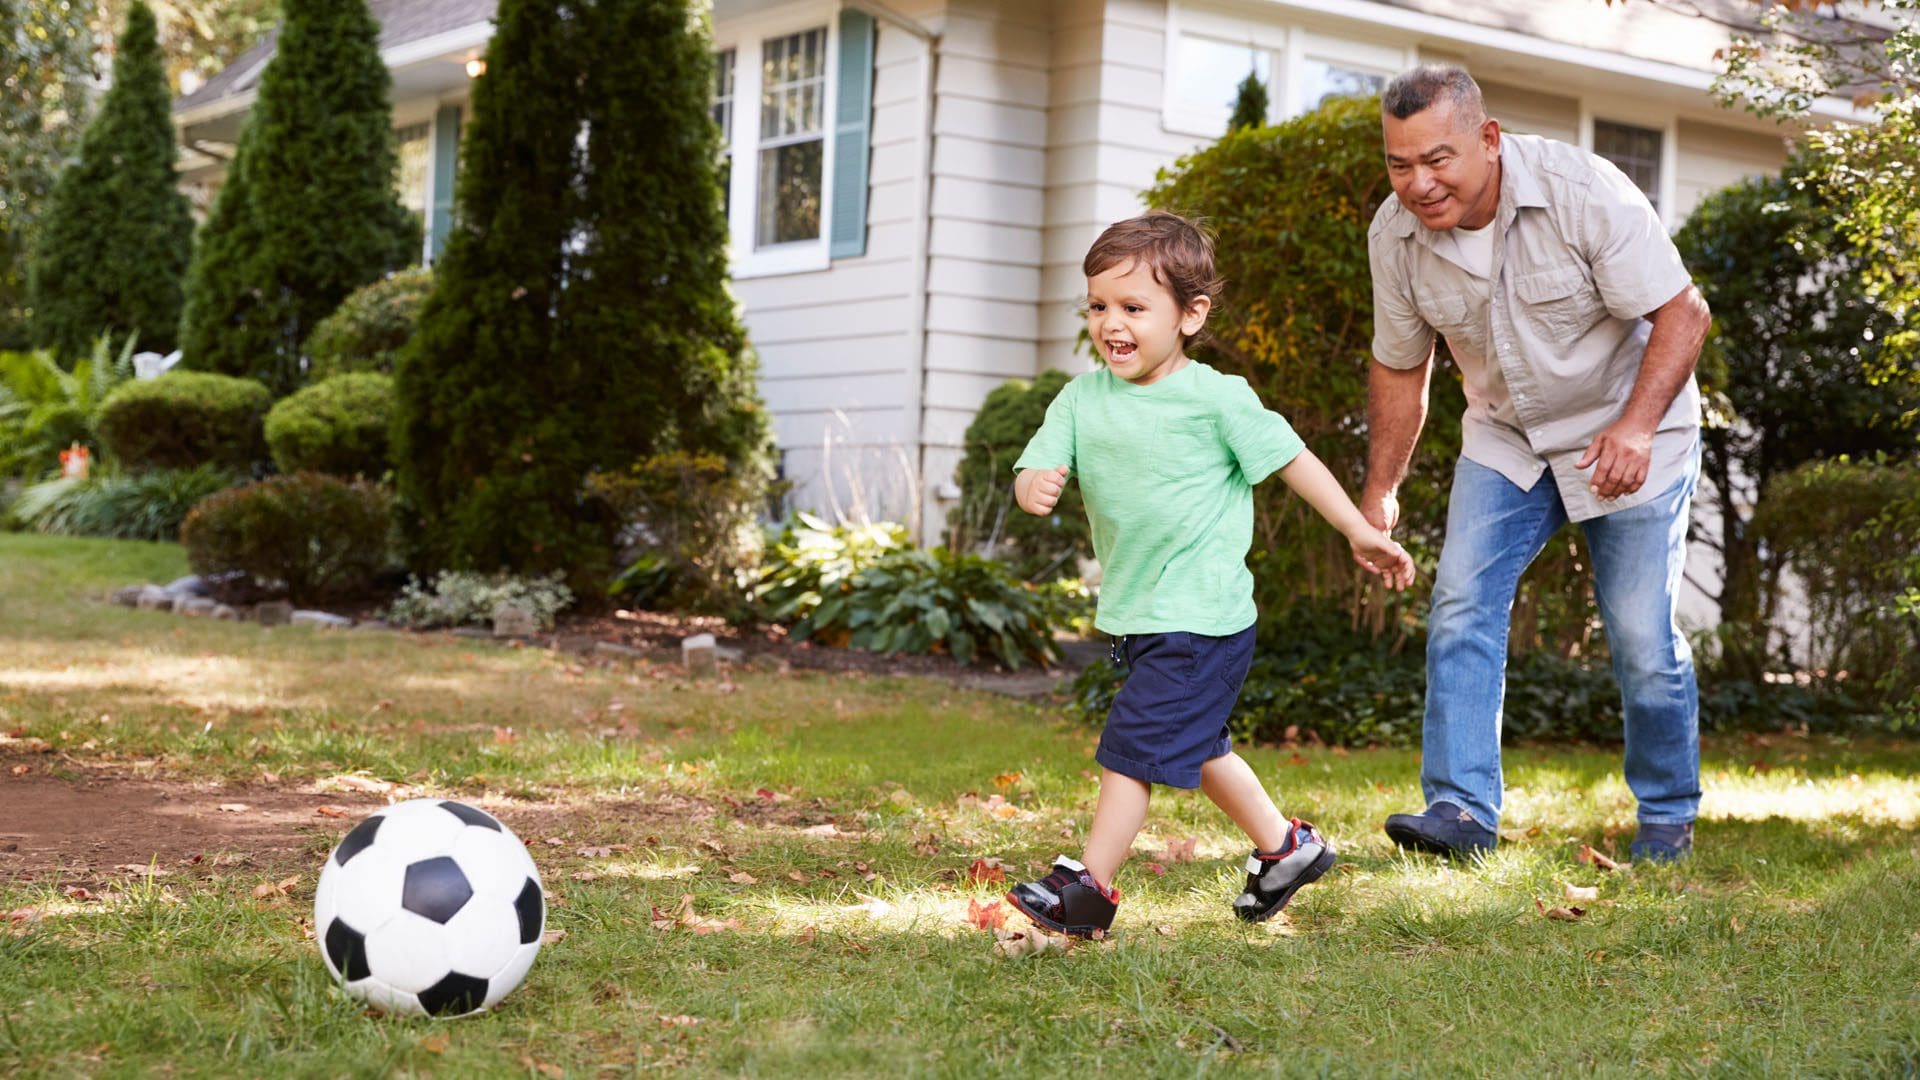 Дед играет с внуком в футбол. Дедушка играет в футбол с внуком. Дедушка футболист. Дедушка играет с детьми в футбол. Дедушка играет в футбол